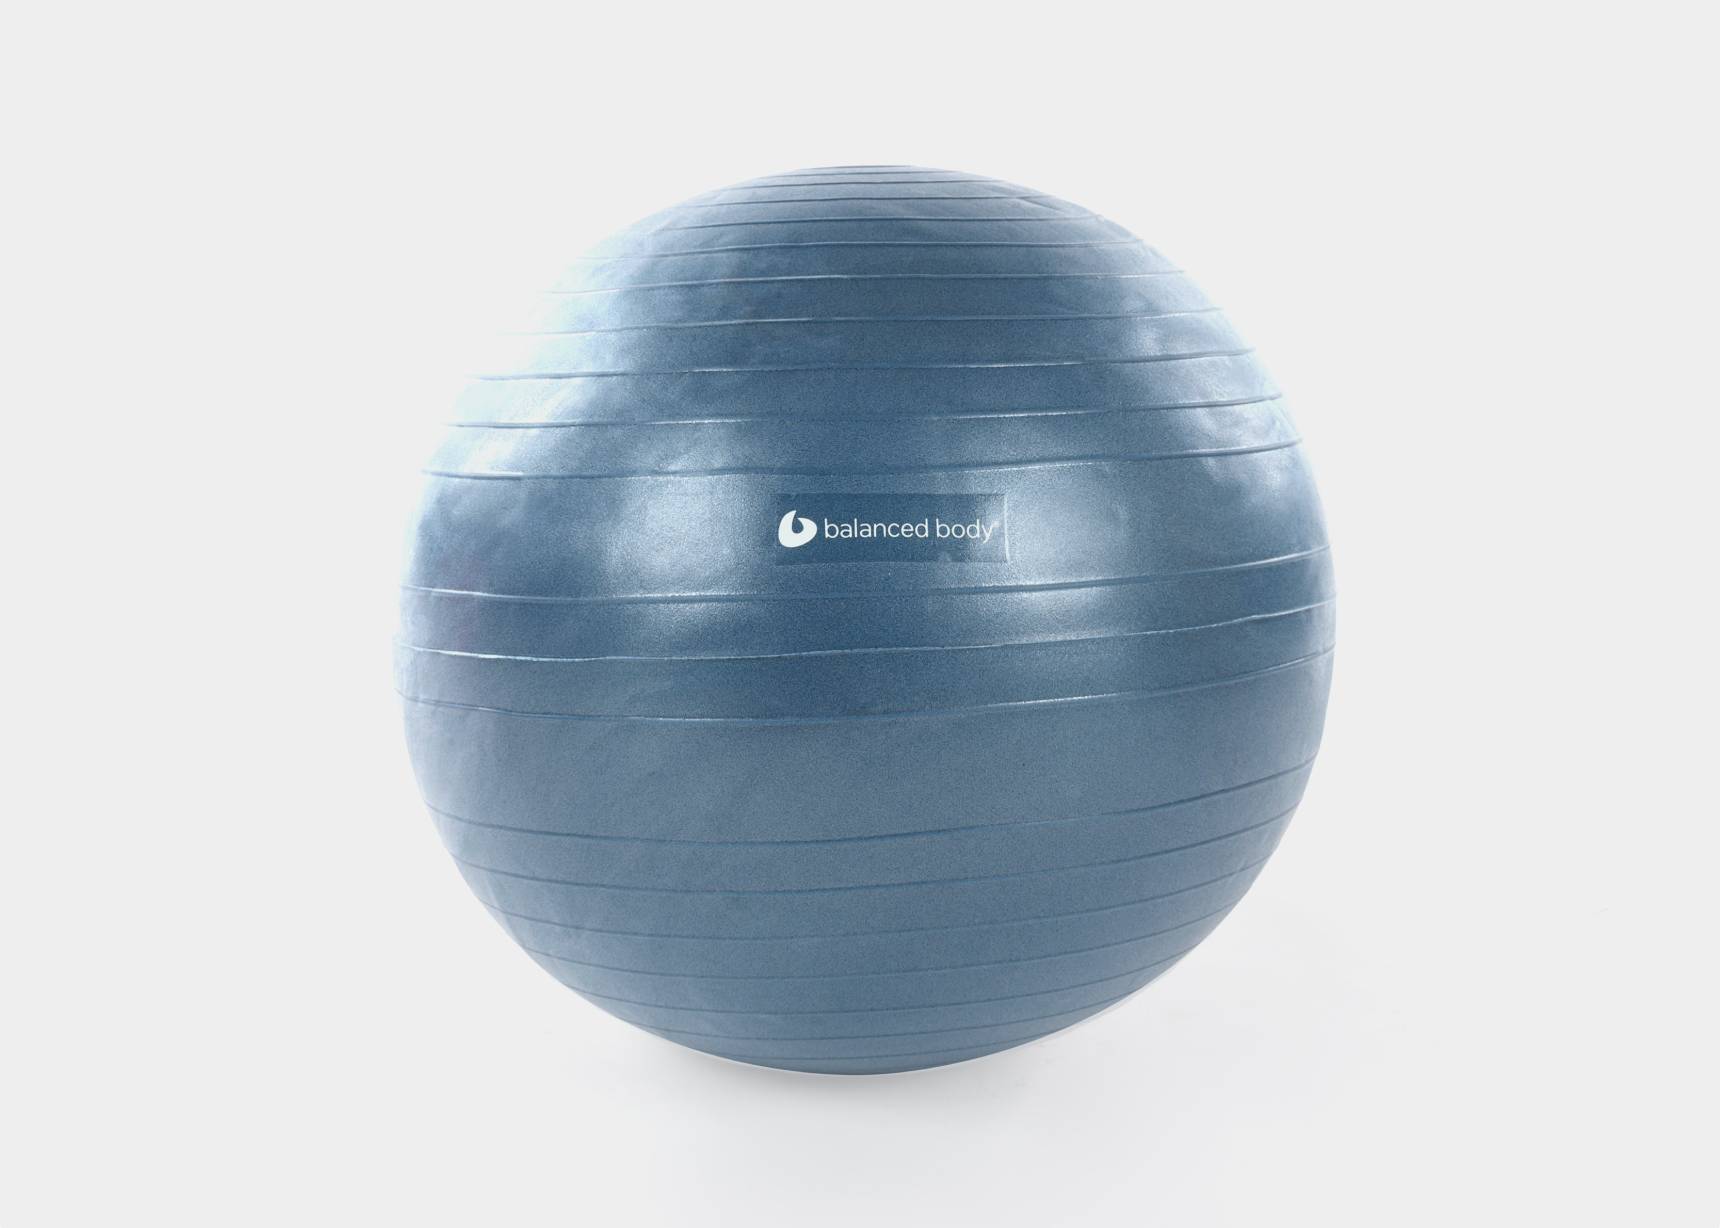 Burst-resistant fitness ball for safe exercise.